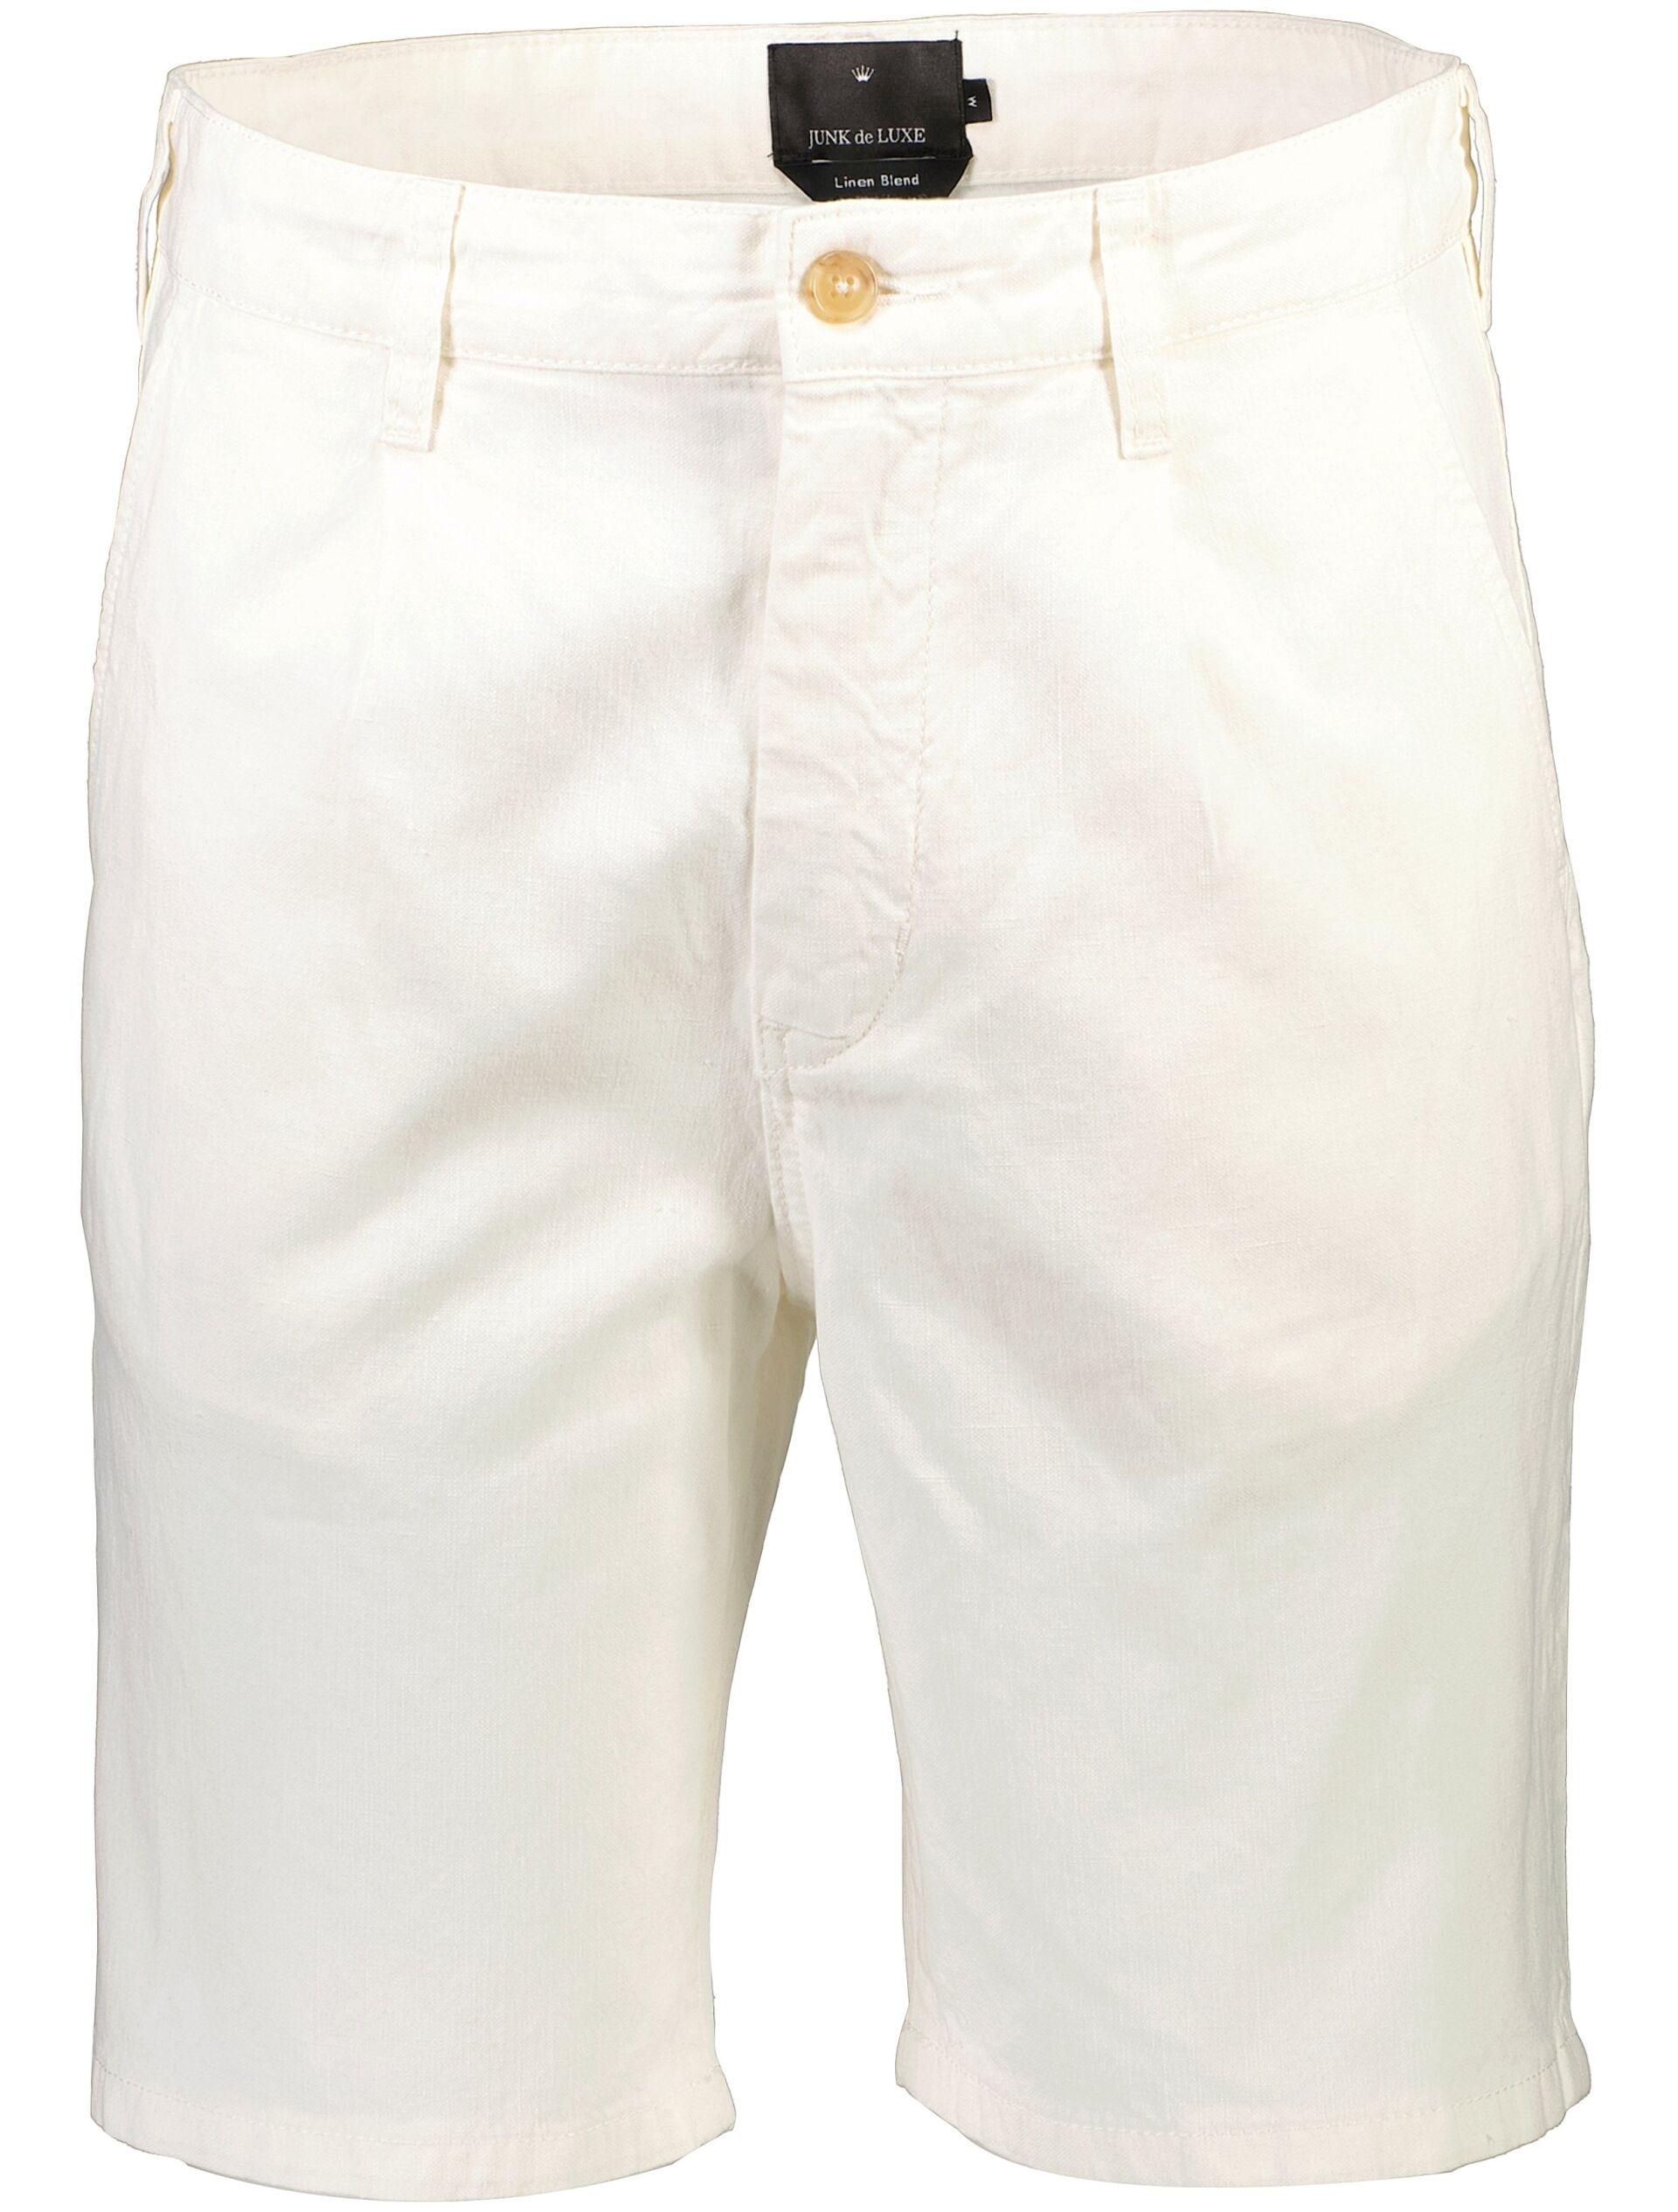 Linen shorts Linen shorts White 60-552021